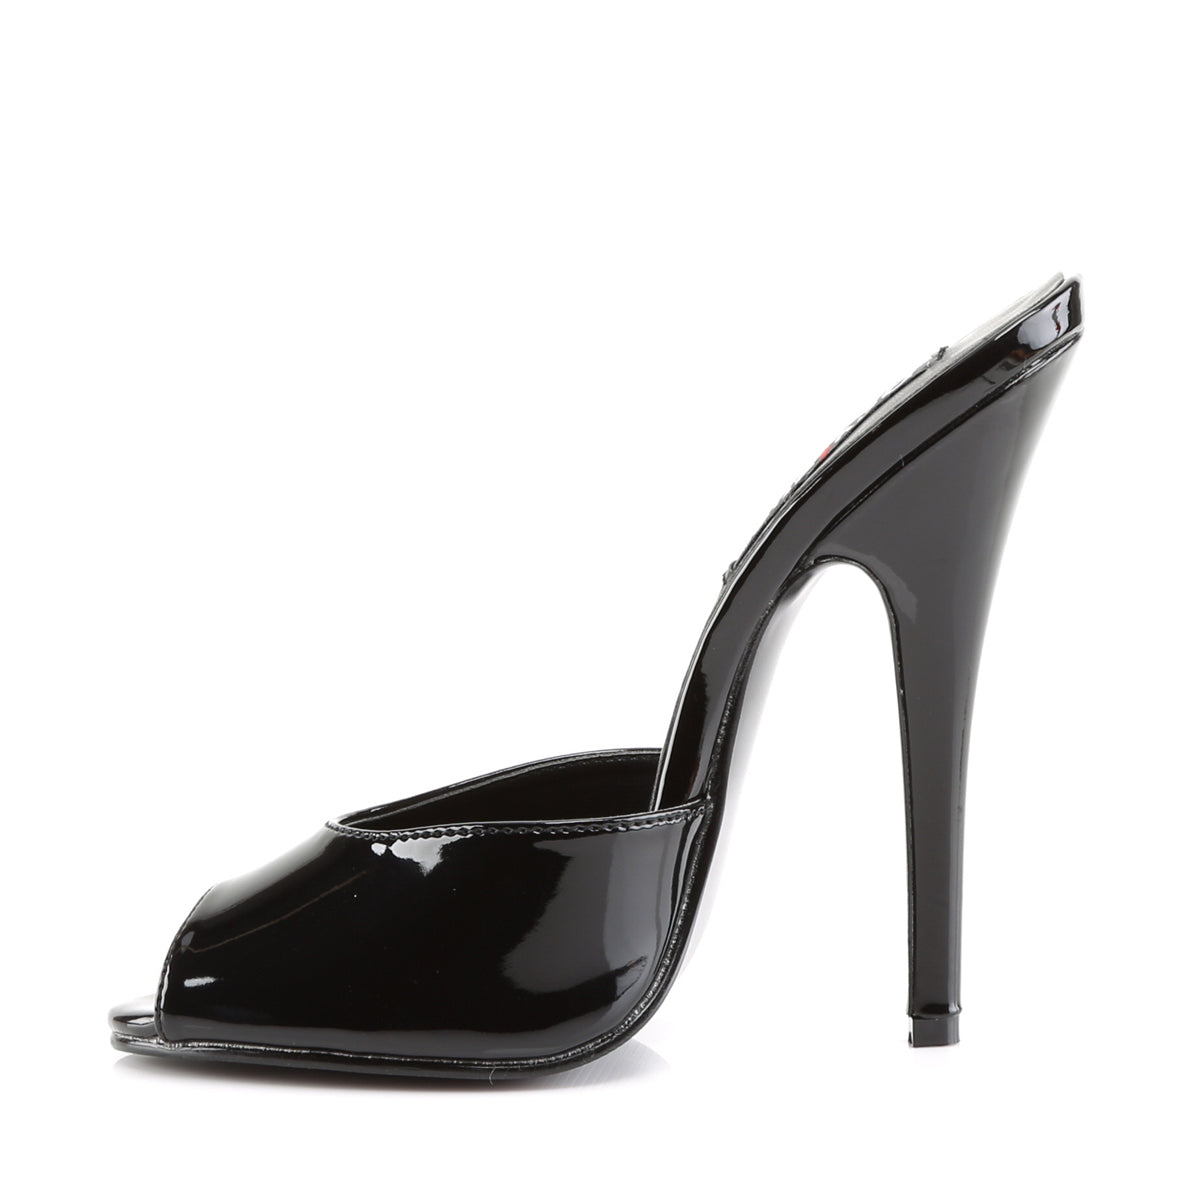 Super Platform Shoes High heels 3D Model $49 - .dae .blend .stl .unknown  .dxf .3ds .obj - Free3D